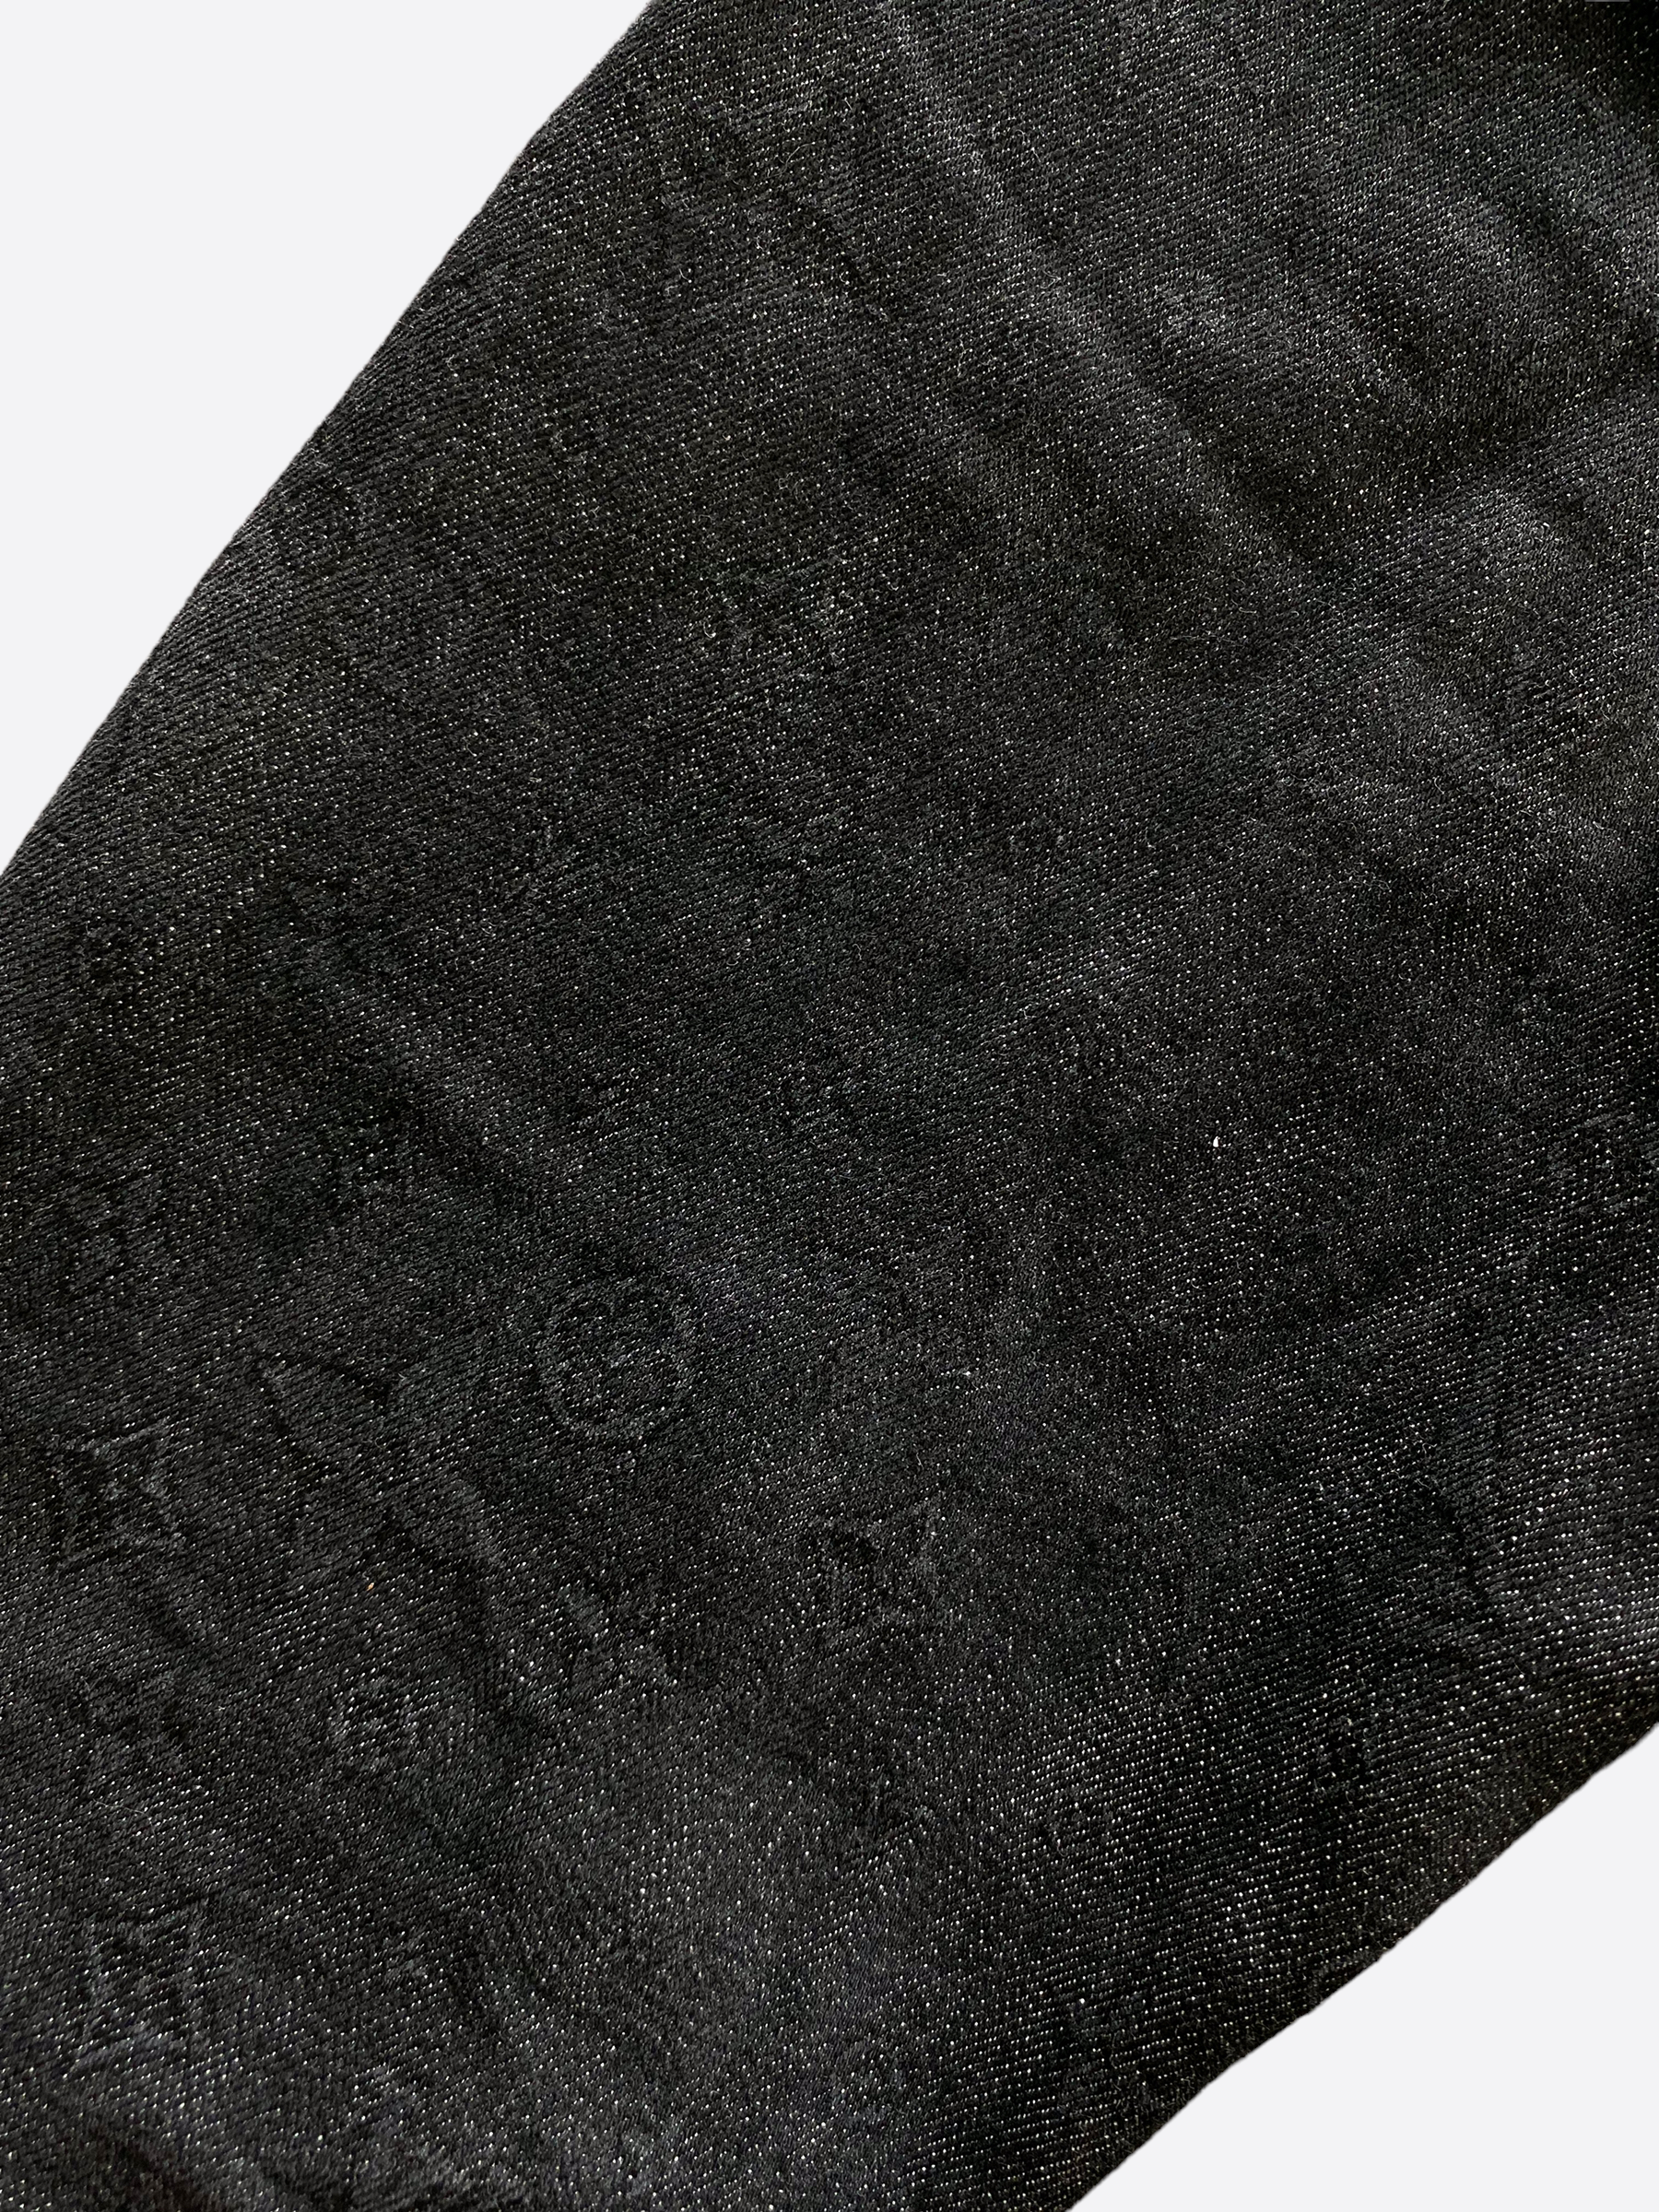 Louis Vuitton - DNA Denim Jacket - Black - Men - Size: 54 - Luxury